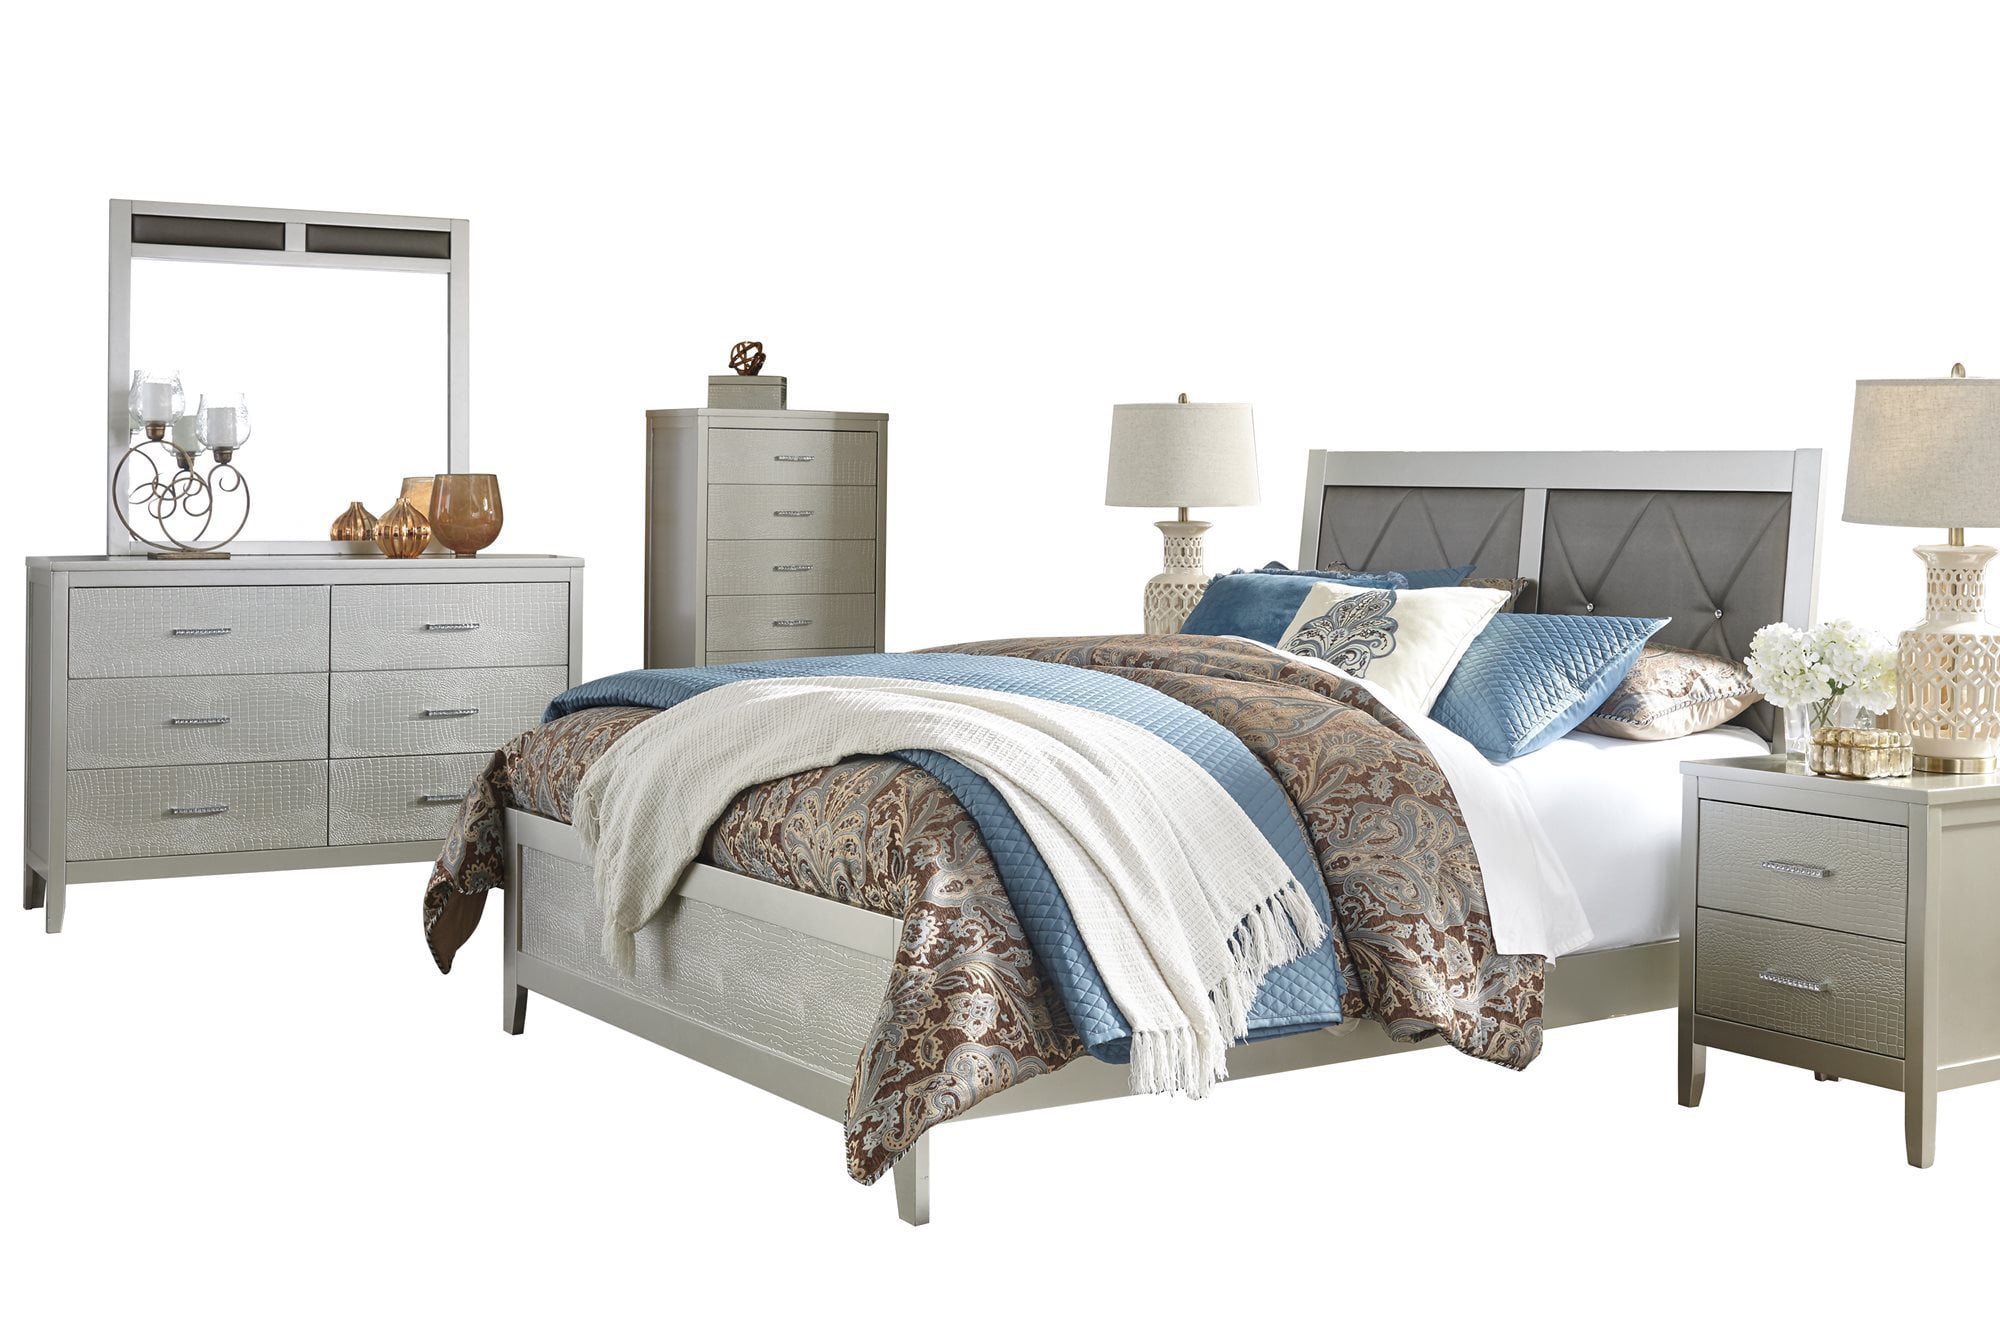 Ashley Furniture Olivet 6 Pc Bedroom Set Queen Panel Bed 2